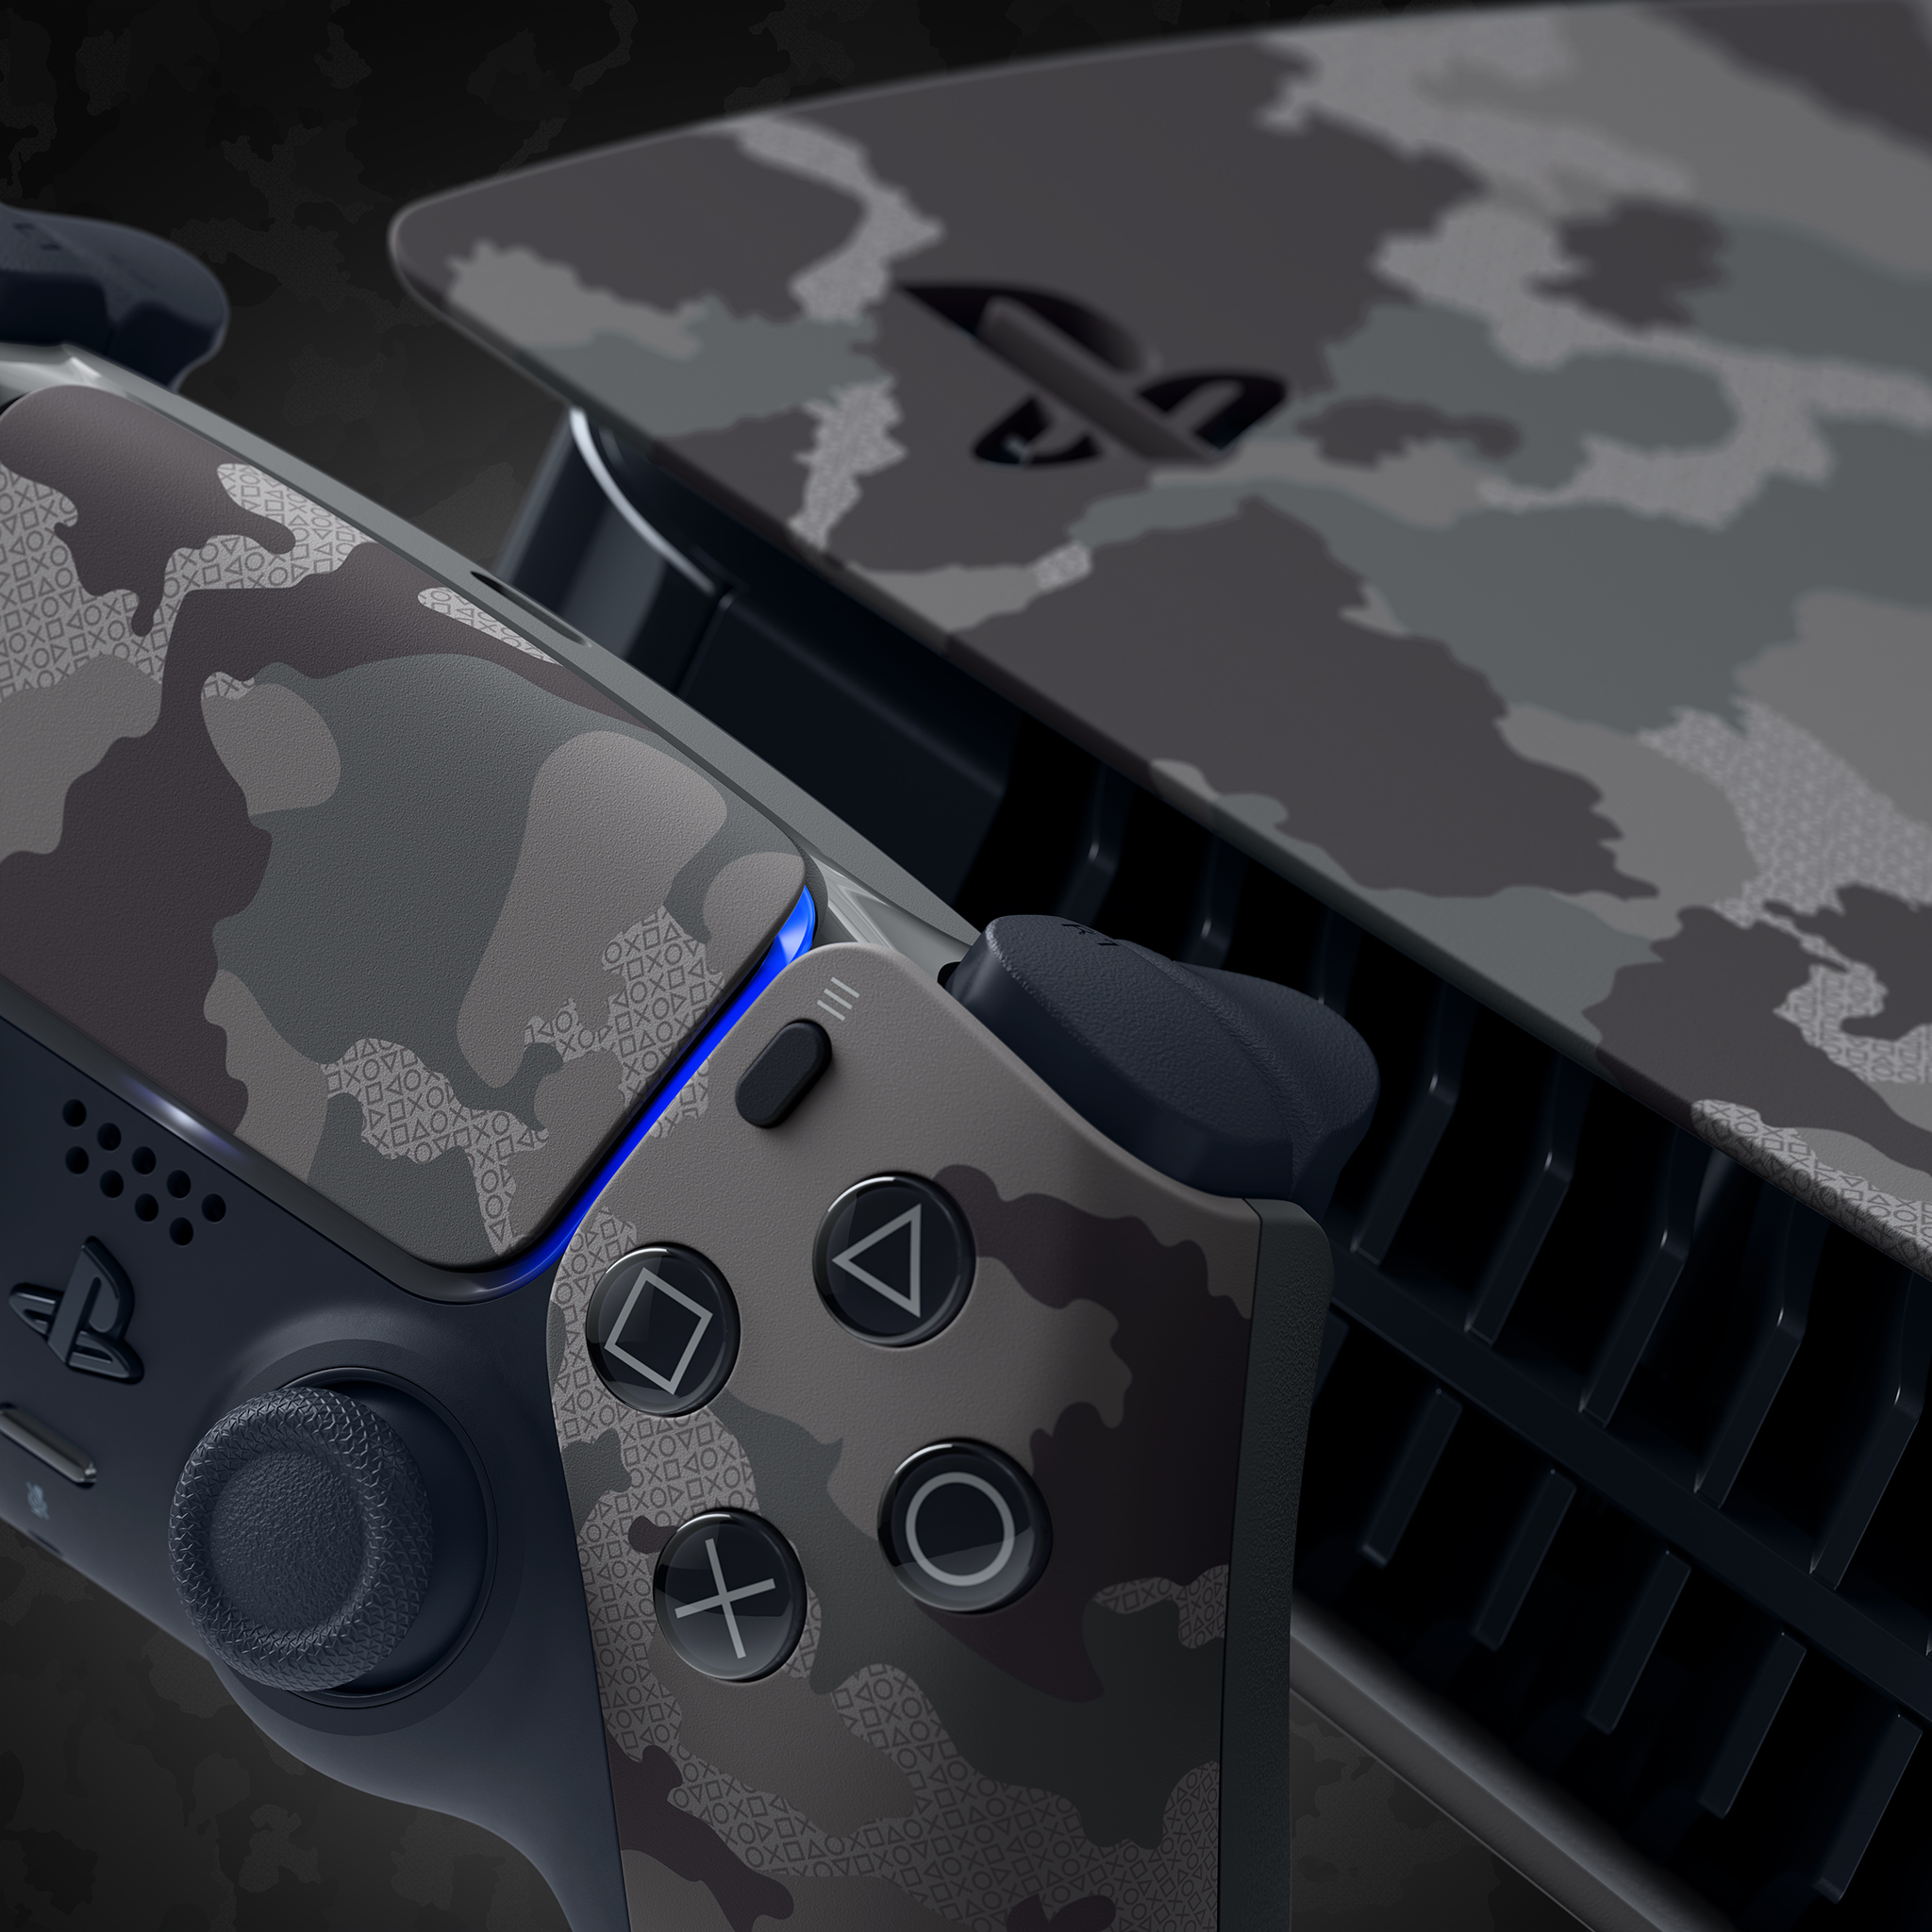 PlayStation France on X: "Avez-vous repéré les signes PlayStation ? 👀 Les  DualSense et façades PS5 de la Collection Grey Camouflage sont disponibles  : https://t.co/FPRQama55K https://t.co/jJ3mlqoYId" / X